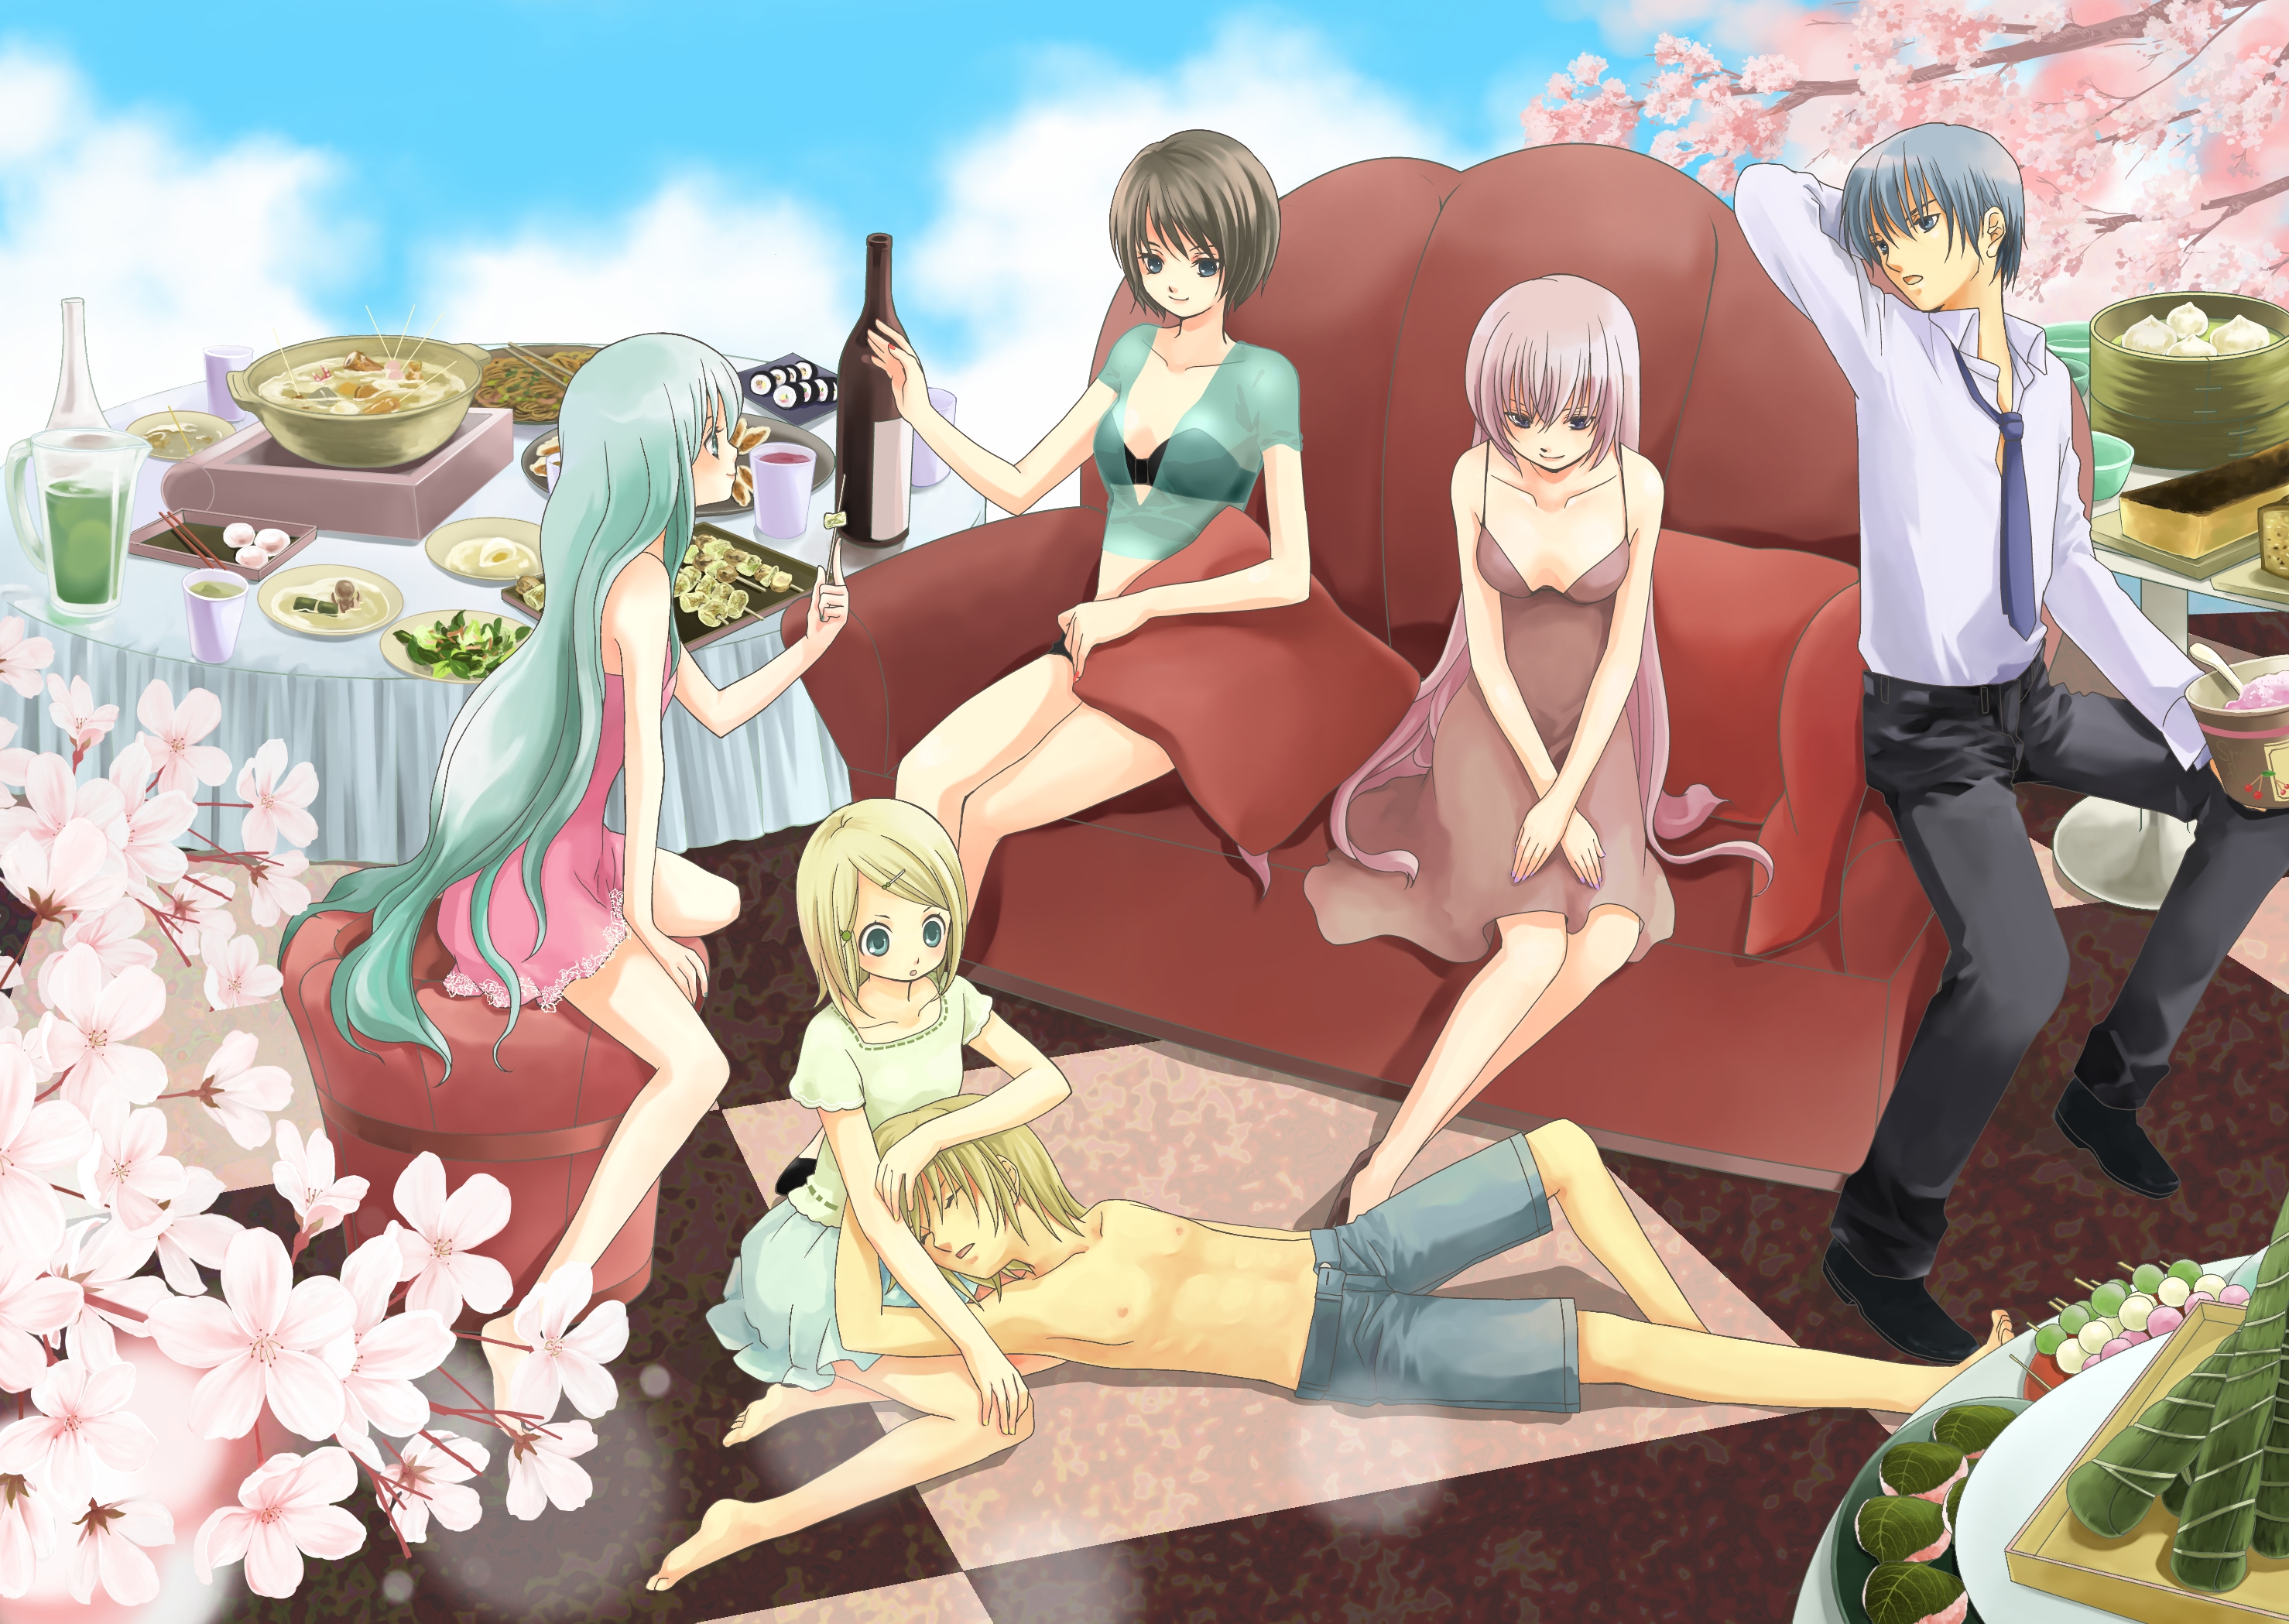 Descarga gratuita de fondo de pantalla para móvil de Vocaloid, Luka Megurine, Animado, Hatsune Miku, Rin Kagamine, Kaito (Vocaloid), Len Kagamine, Meiko (Vocaloid).